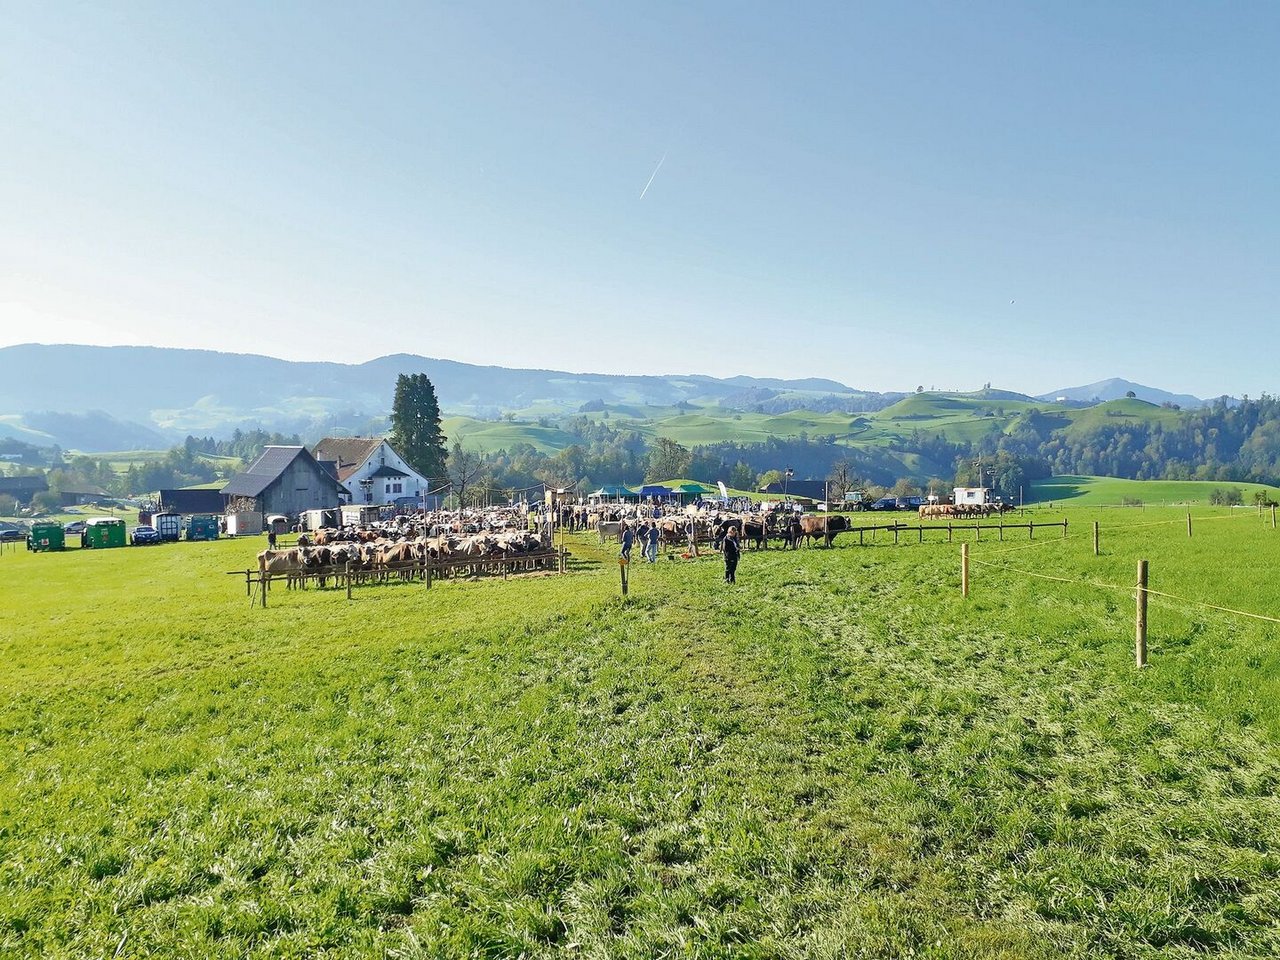 Die Viehschau im zürcherischen Hirzel findet jedes Jahr im Rothus statt. Das Wetter zeigte sich heuer von der Sonnenseite, die malerische Landschaft bot die perfekte Kulisse für die Schau.